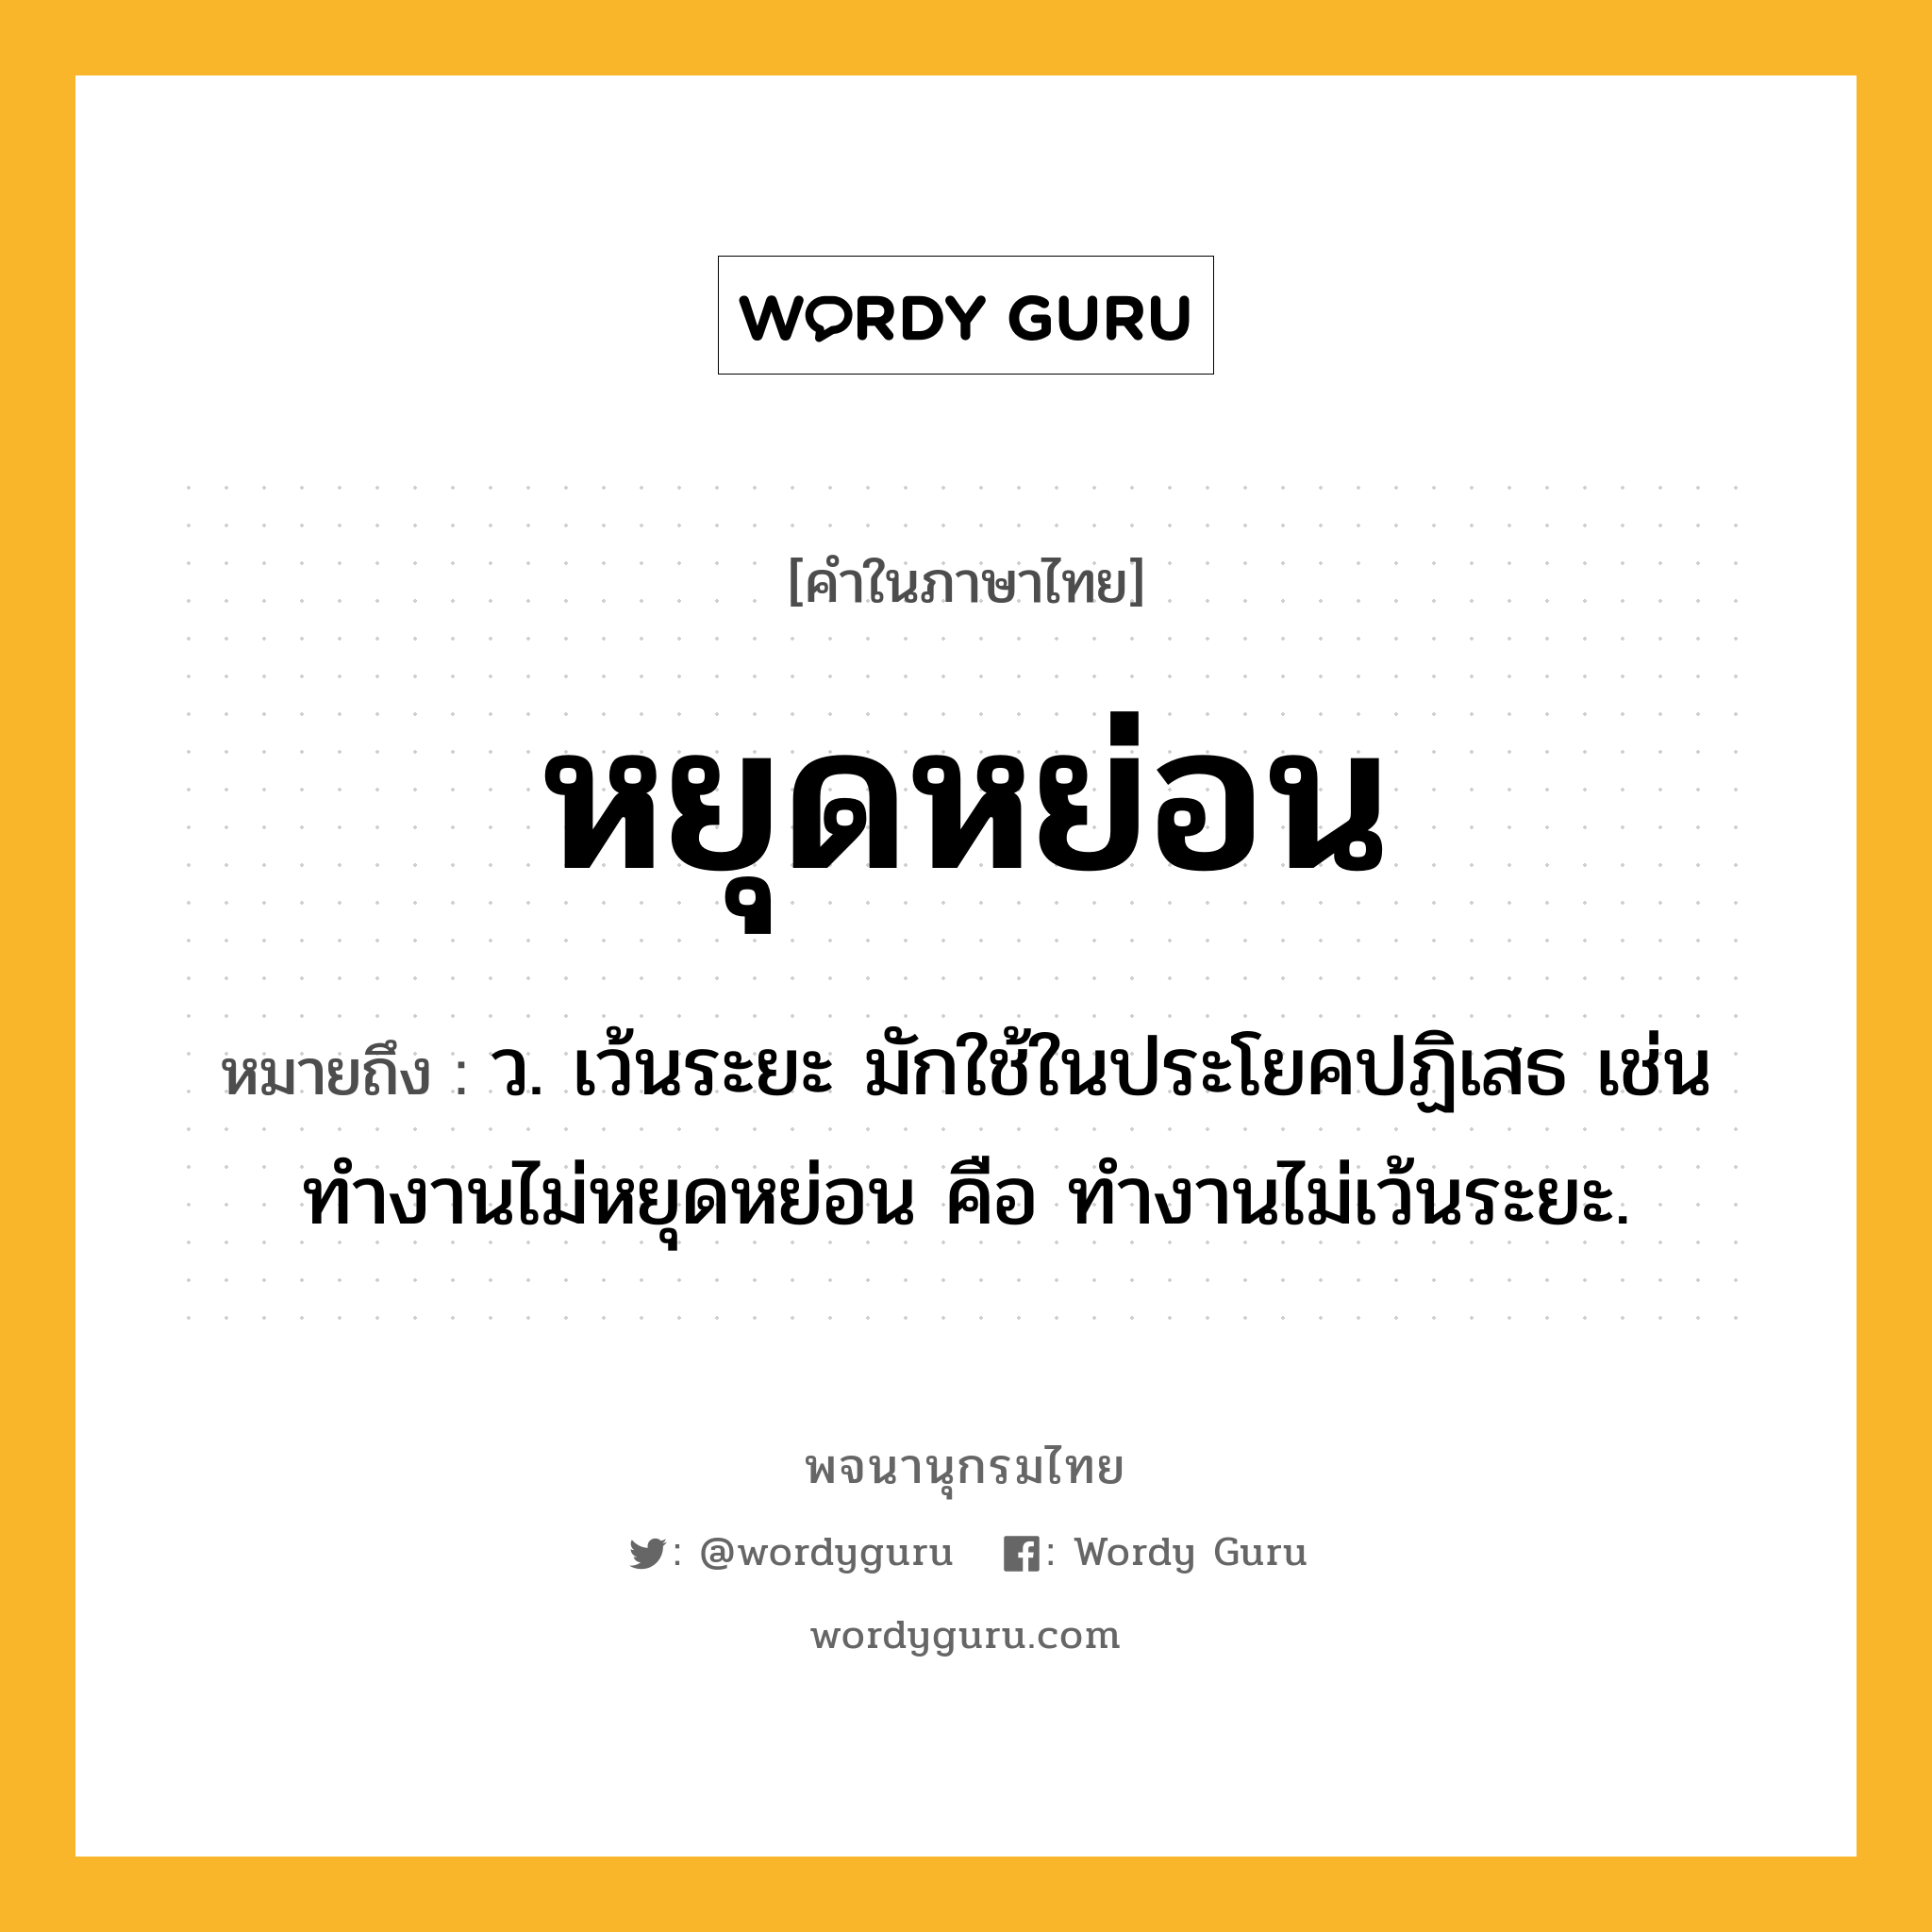 หยุดหย่อน หมายถึงอะไร?, คำในภาษาไทย หยุดหย่อน หมายถึง ว. เว้นระยะ มักใช้ในประโยคปฏิเสธ เช่น ทํางานไม่หยุดหย่อน คือ ทํางานไม่เว้นระยะ.